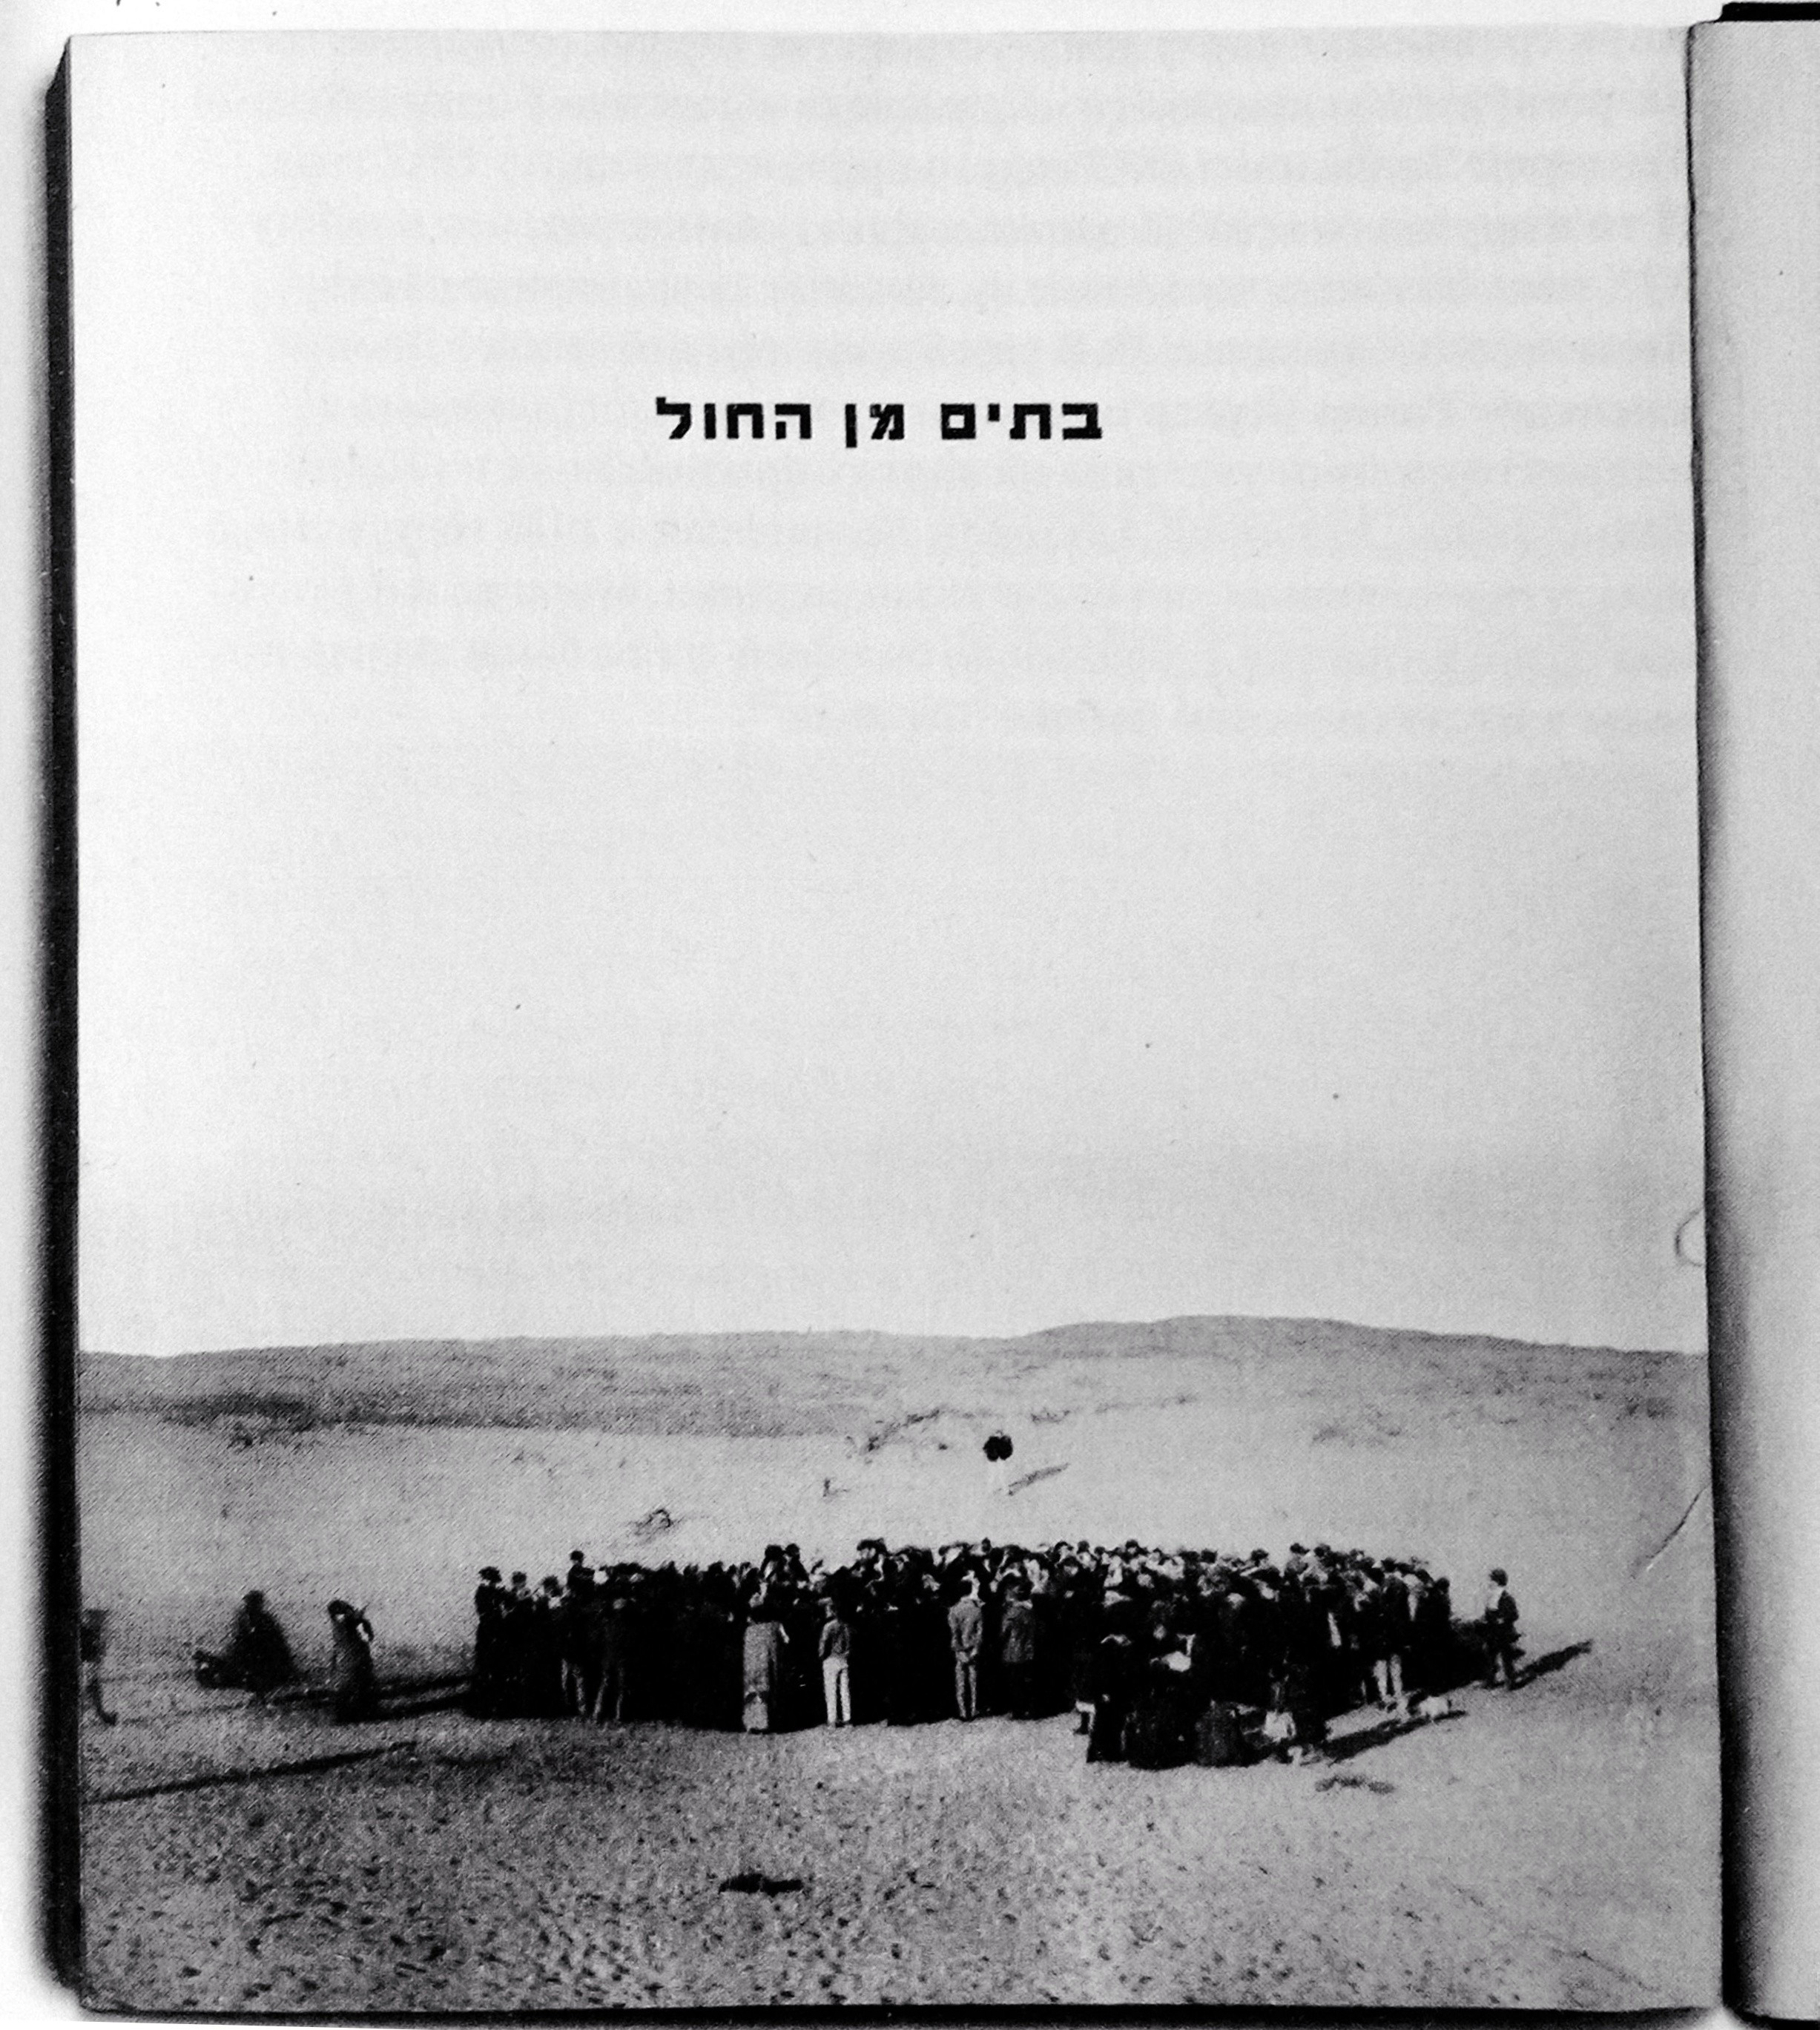 Metsger-Samok, Nitsah. Des Maisons sur la Sable: Tel-Aviv, Mouvement moderne et esprit Bauhaus. Bilingual edition English/French. Editions de l’Eclat, Paris, 2004.